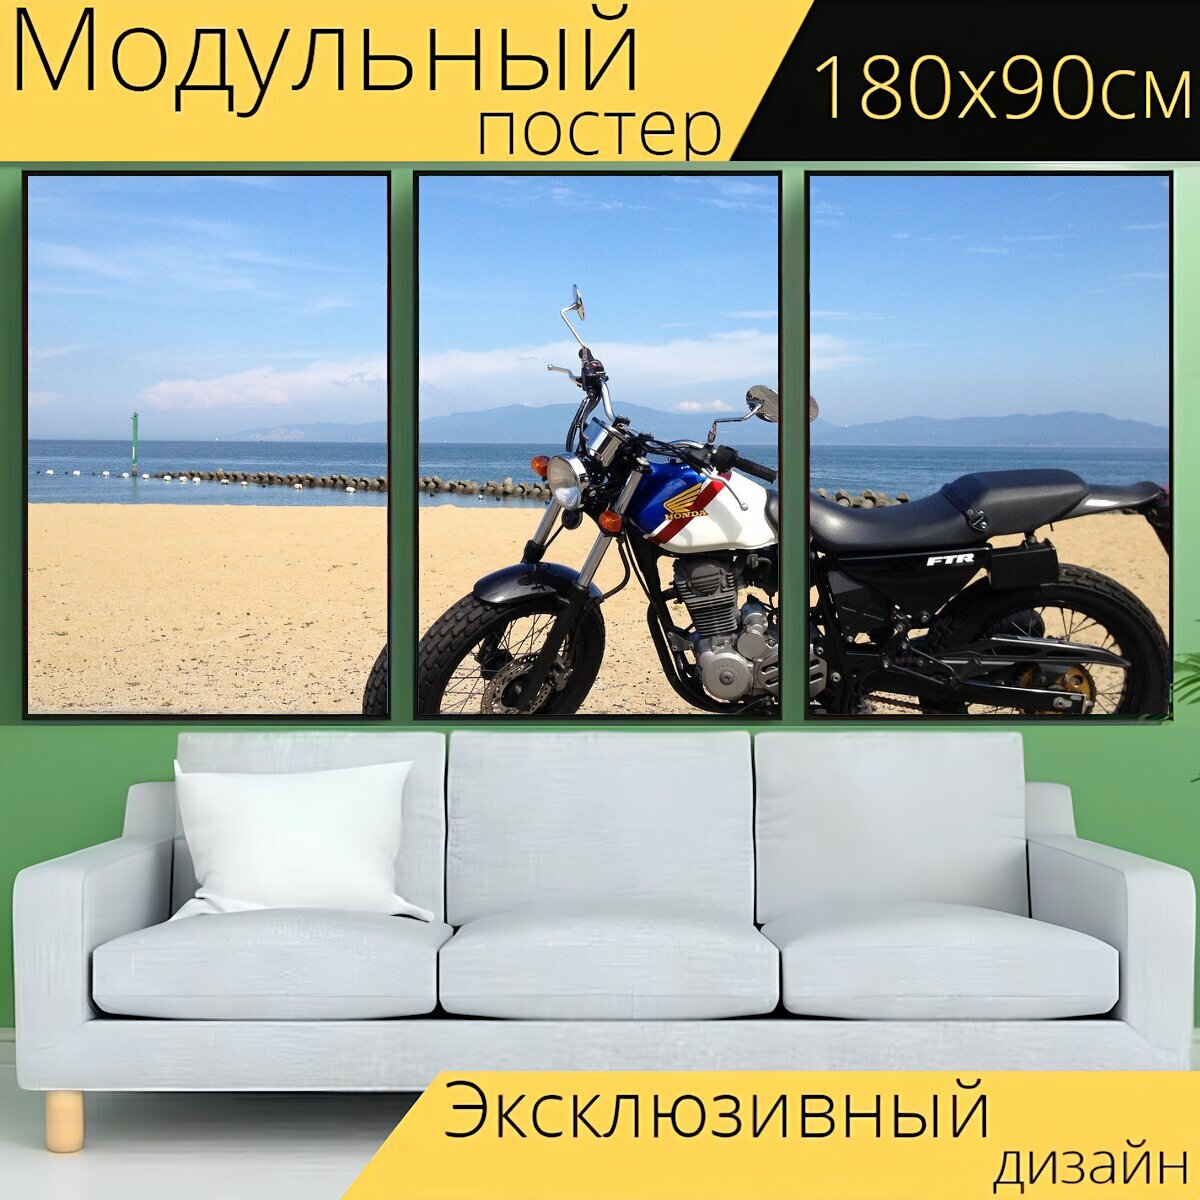 Модульный постер "Велосипед, мотоцикл, мотоциклами" 180 x 90 см. для интерьера